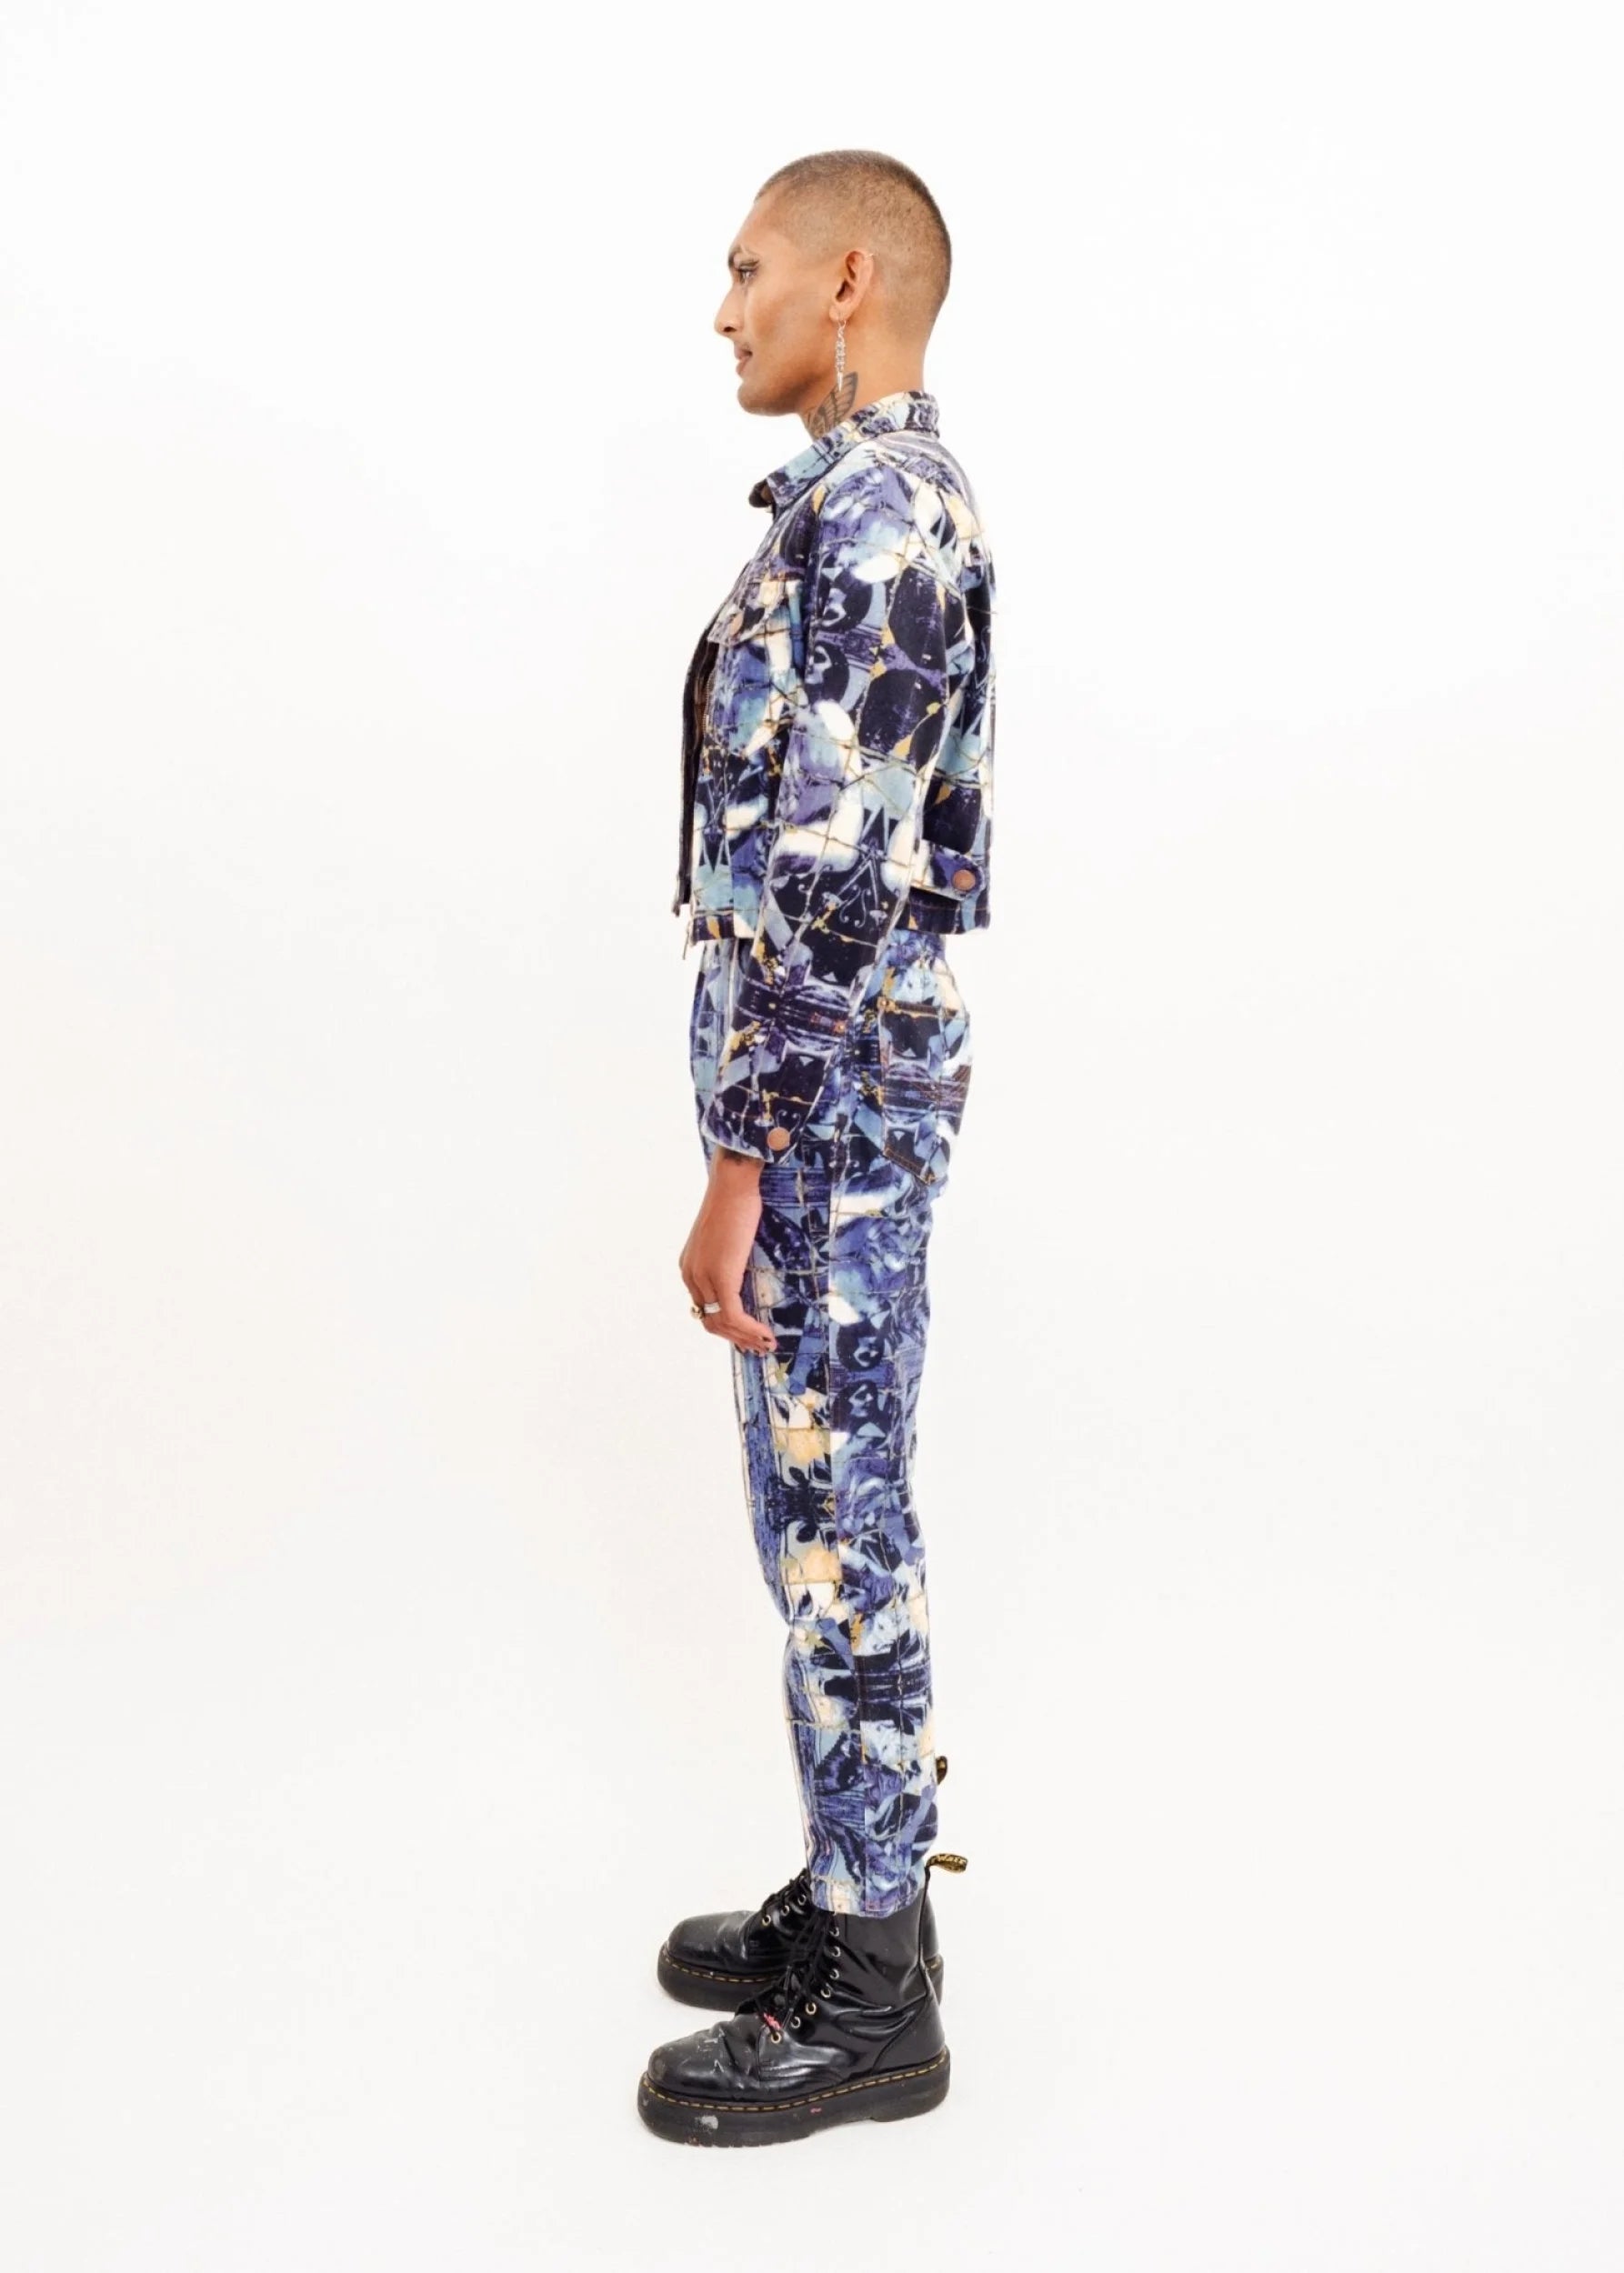 Gaultier Jean’s Broken mosaic print denim suit